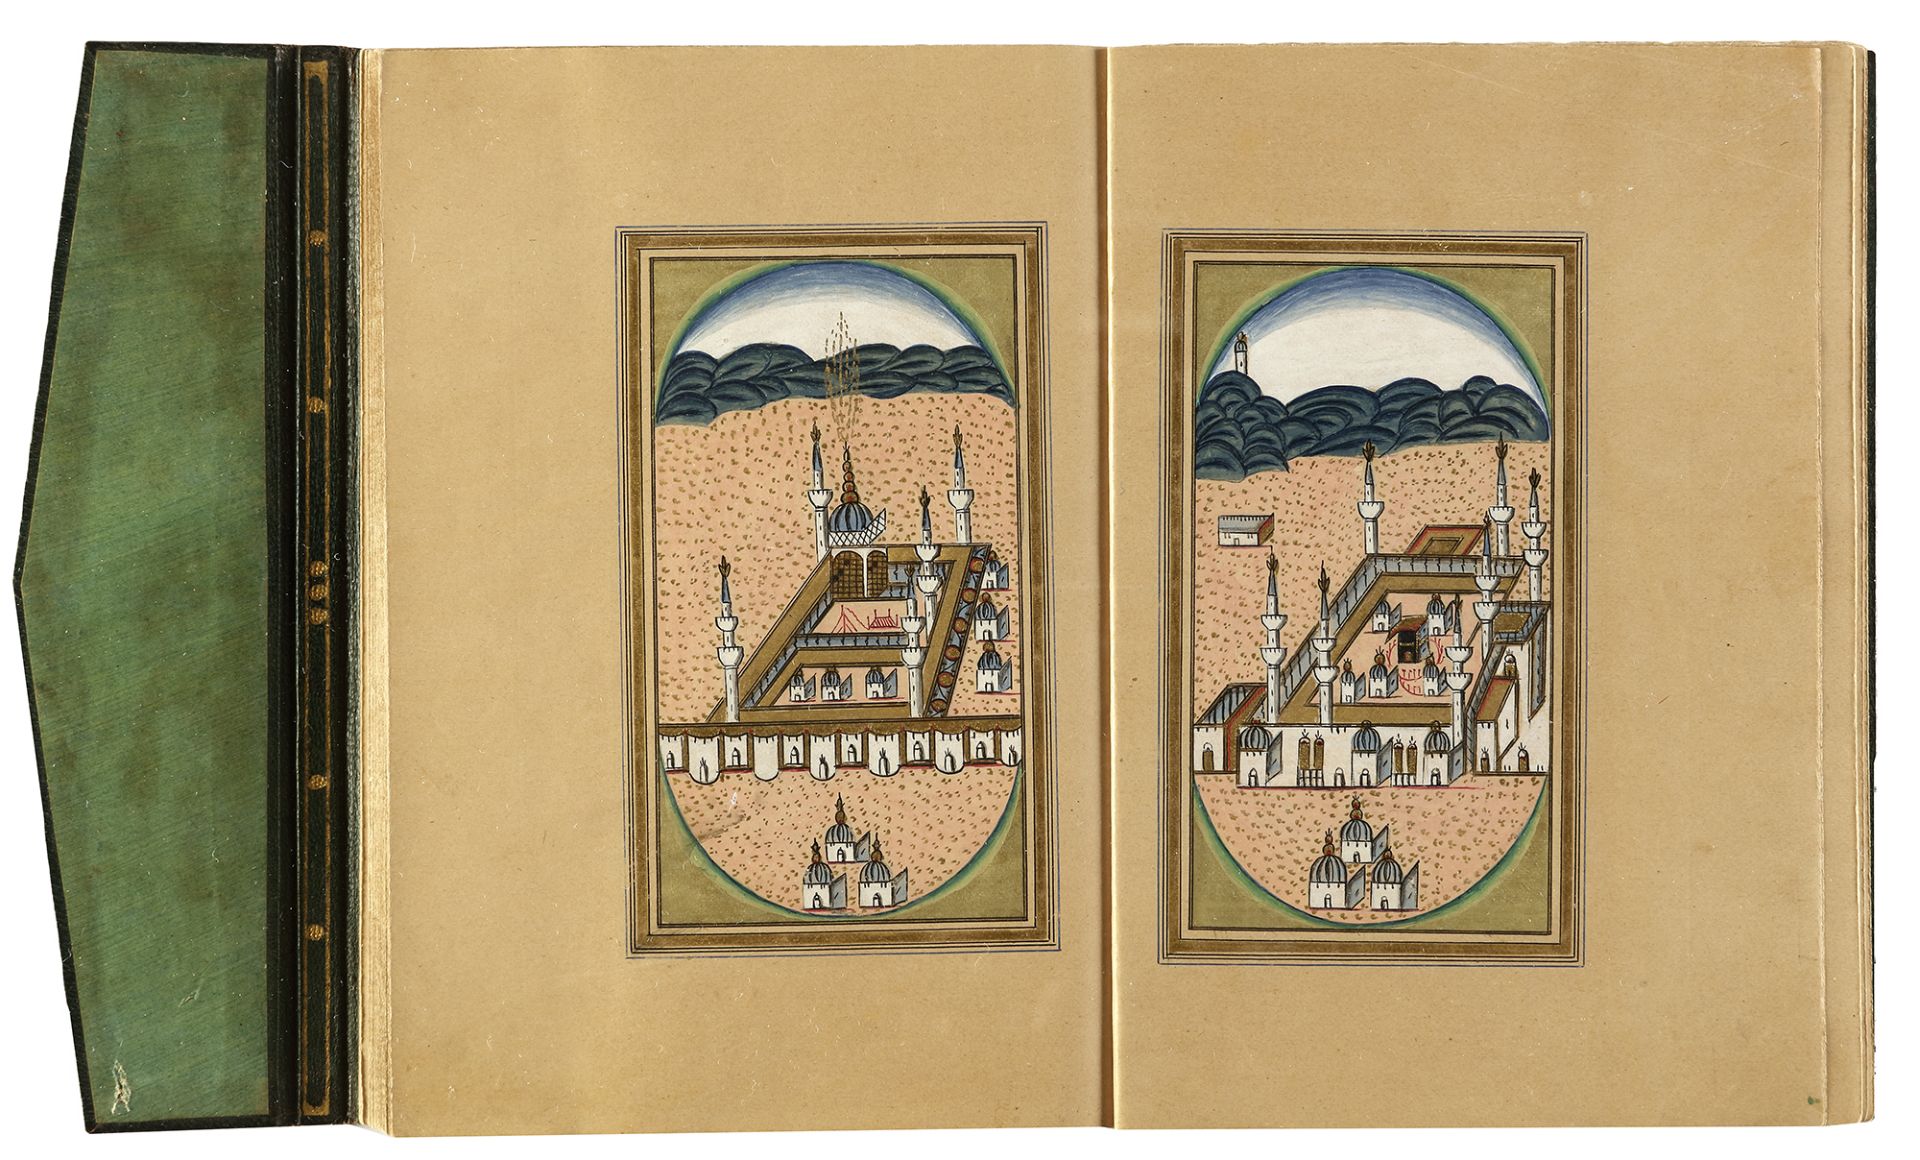 DALA’IL AL-KHAYRAT BY OSMAN HILMI STUDENT OF MUHAMMED ANWAR EFENDI, TURKEY, 1295 AH/1878 AD - Image 8 of 9